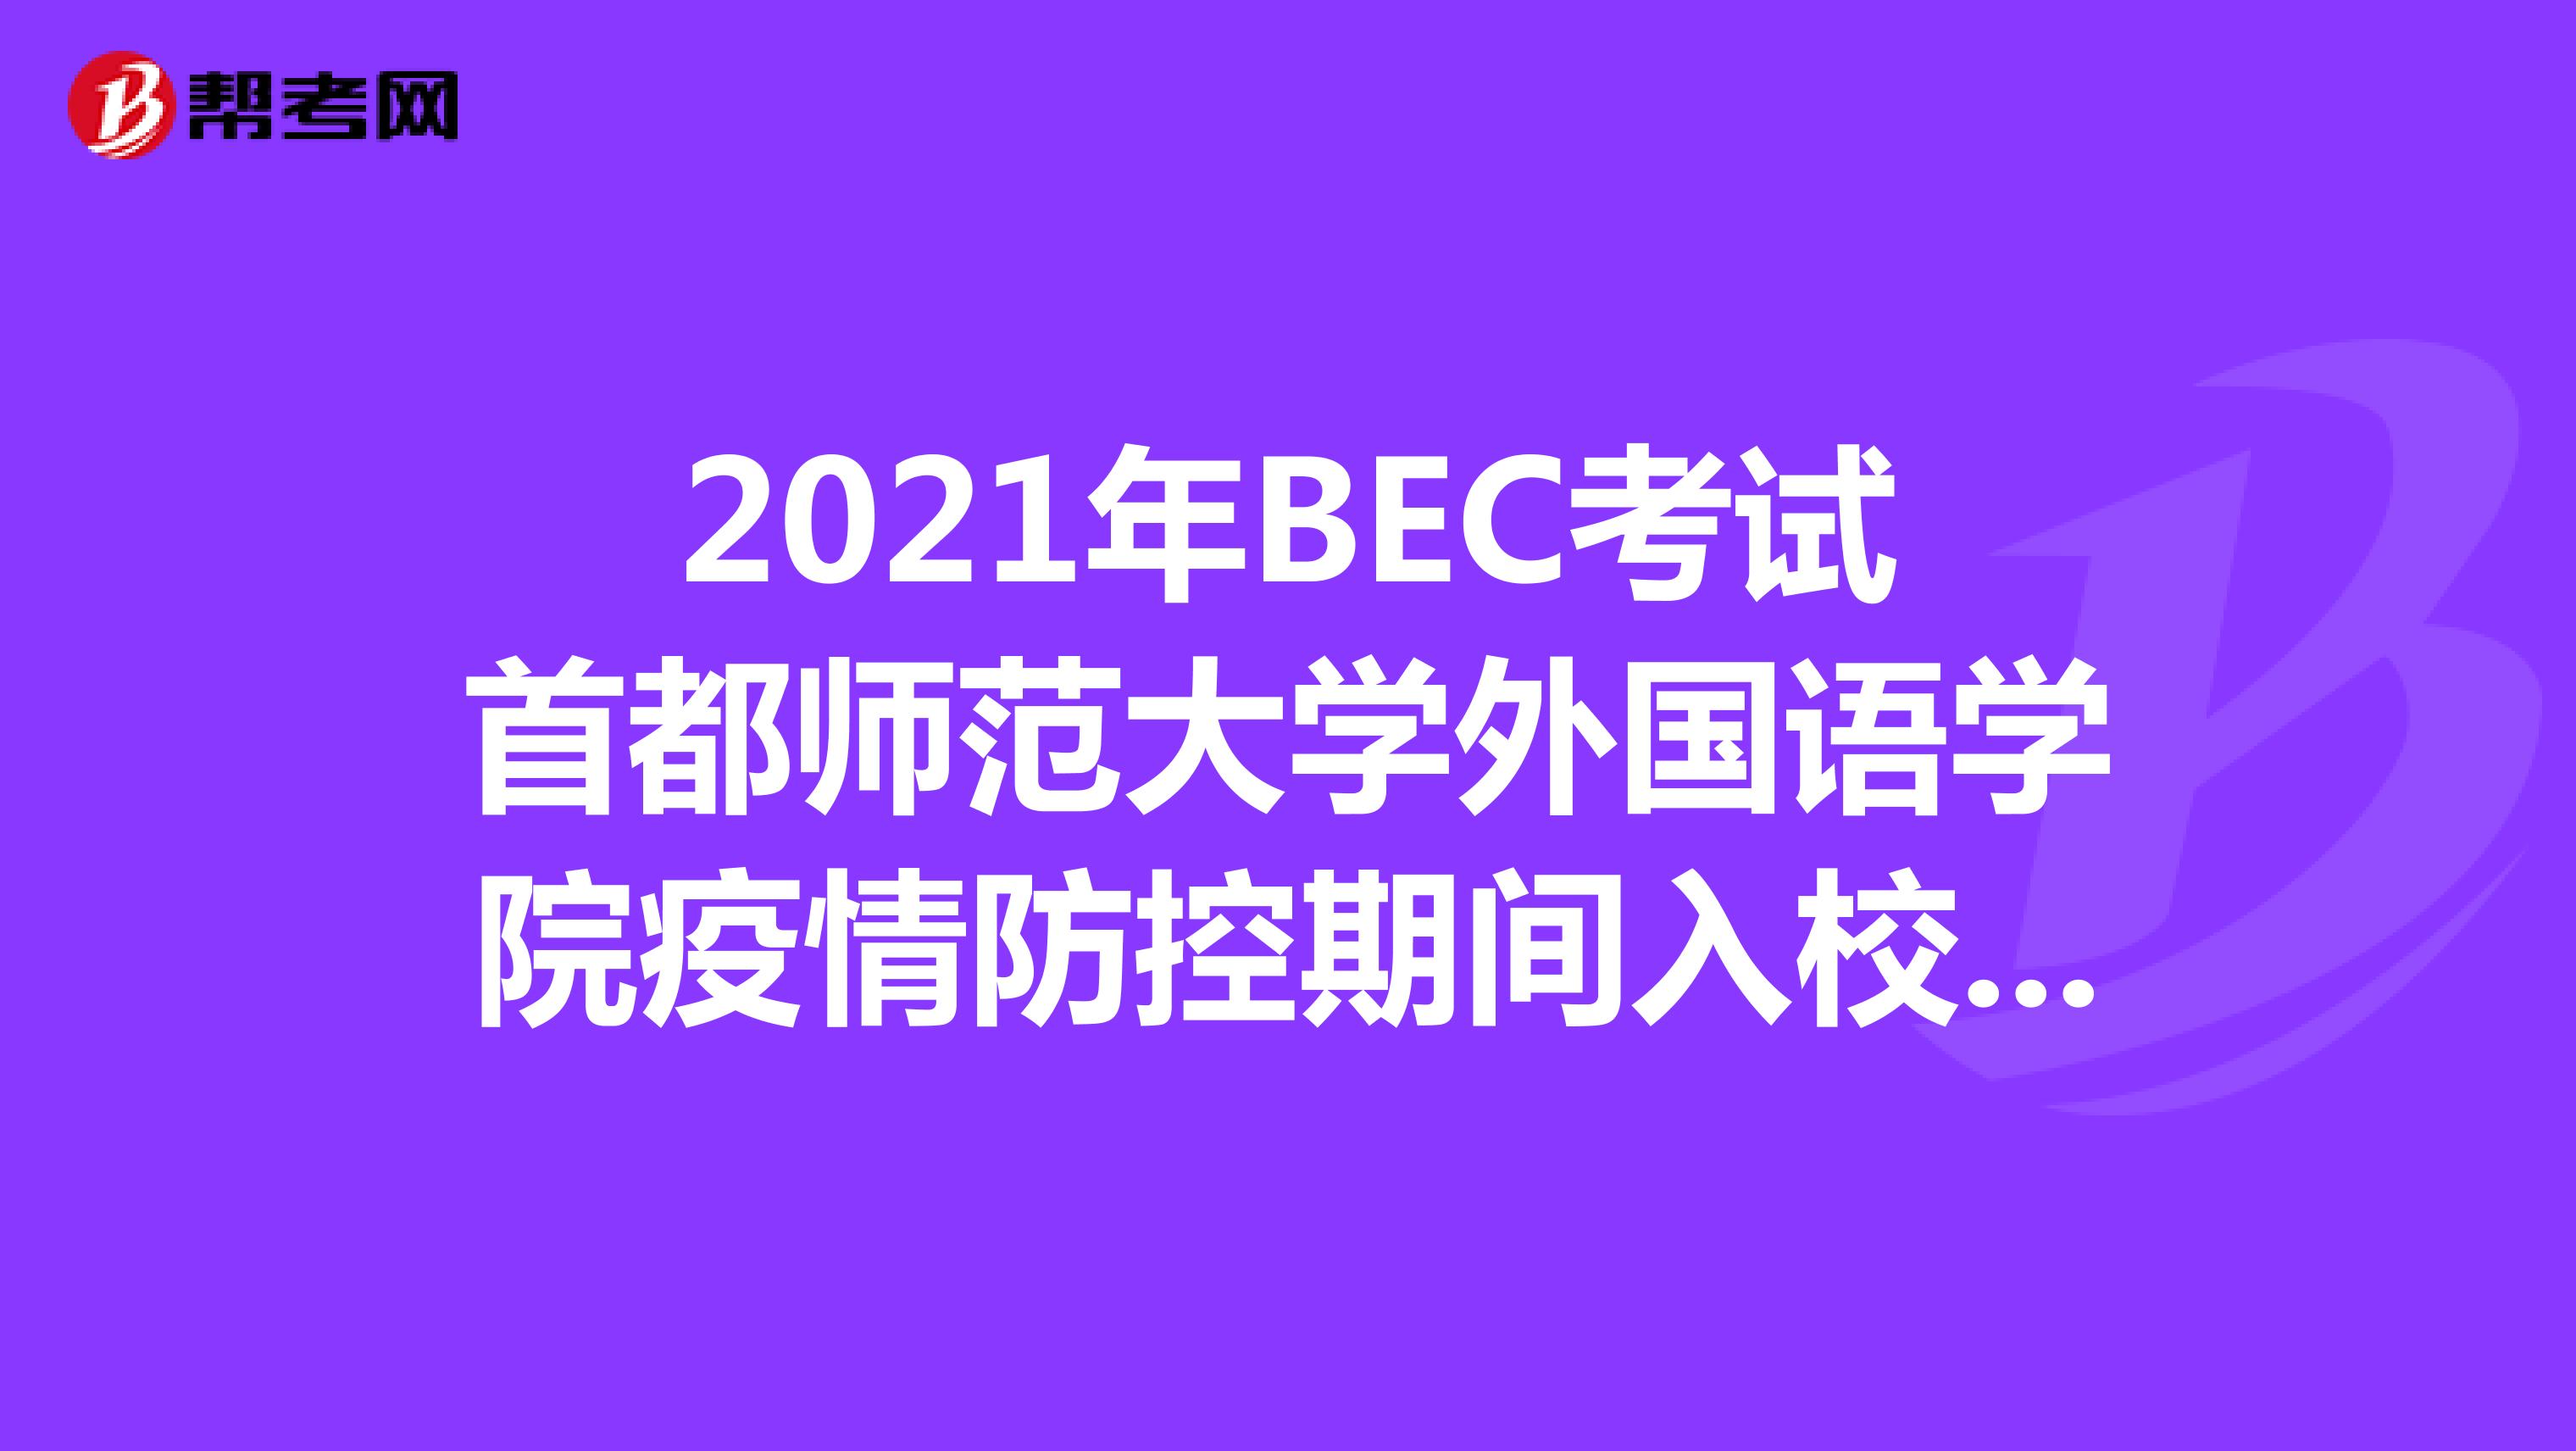 2021年BEC考试首都师范大学外国语学院疫情防控期间入校要求